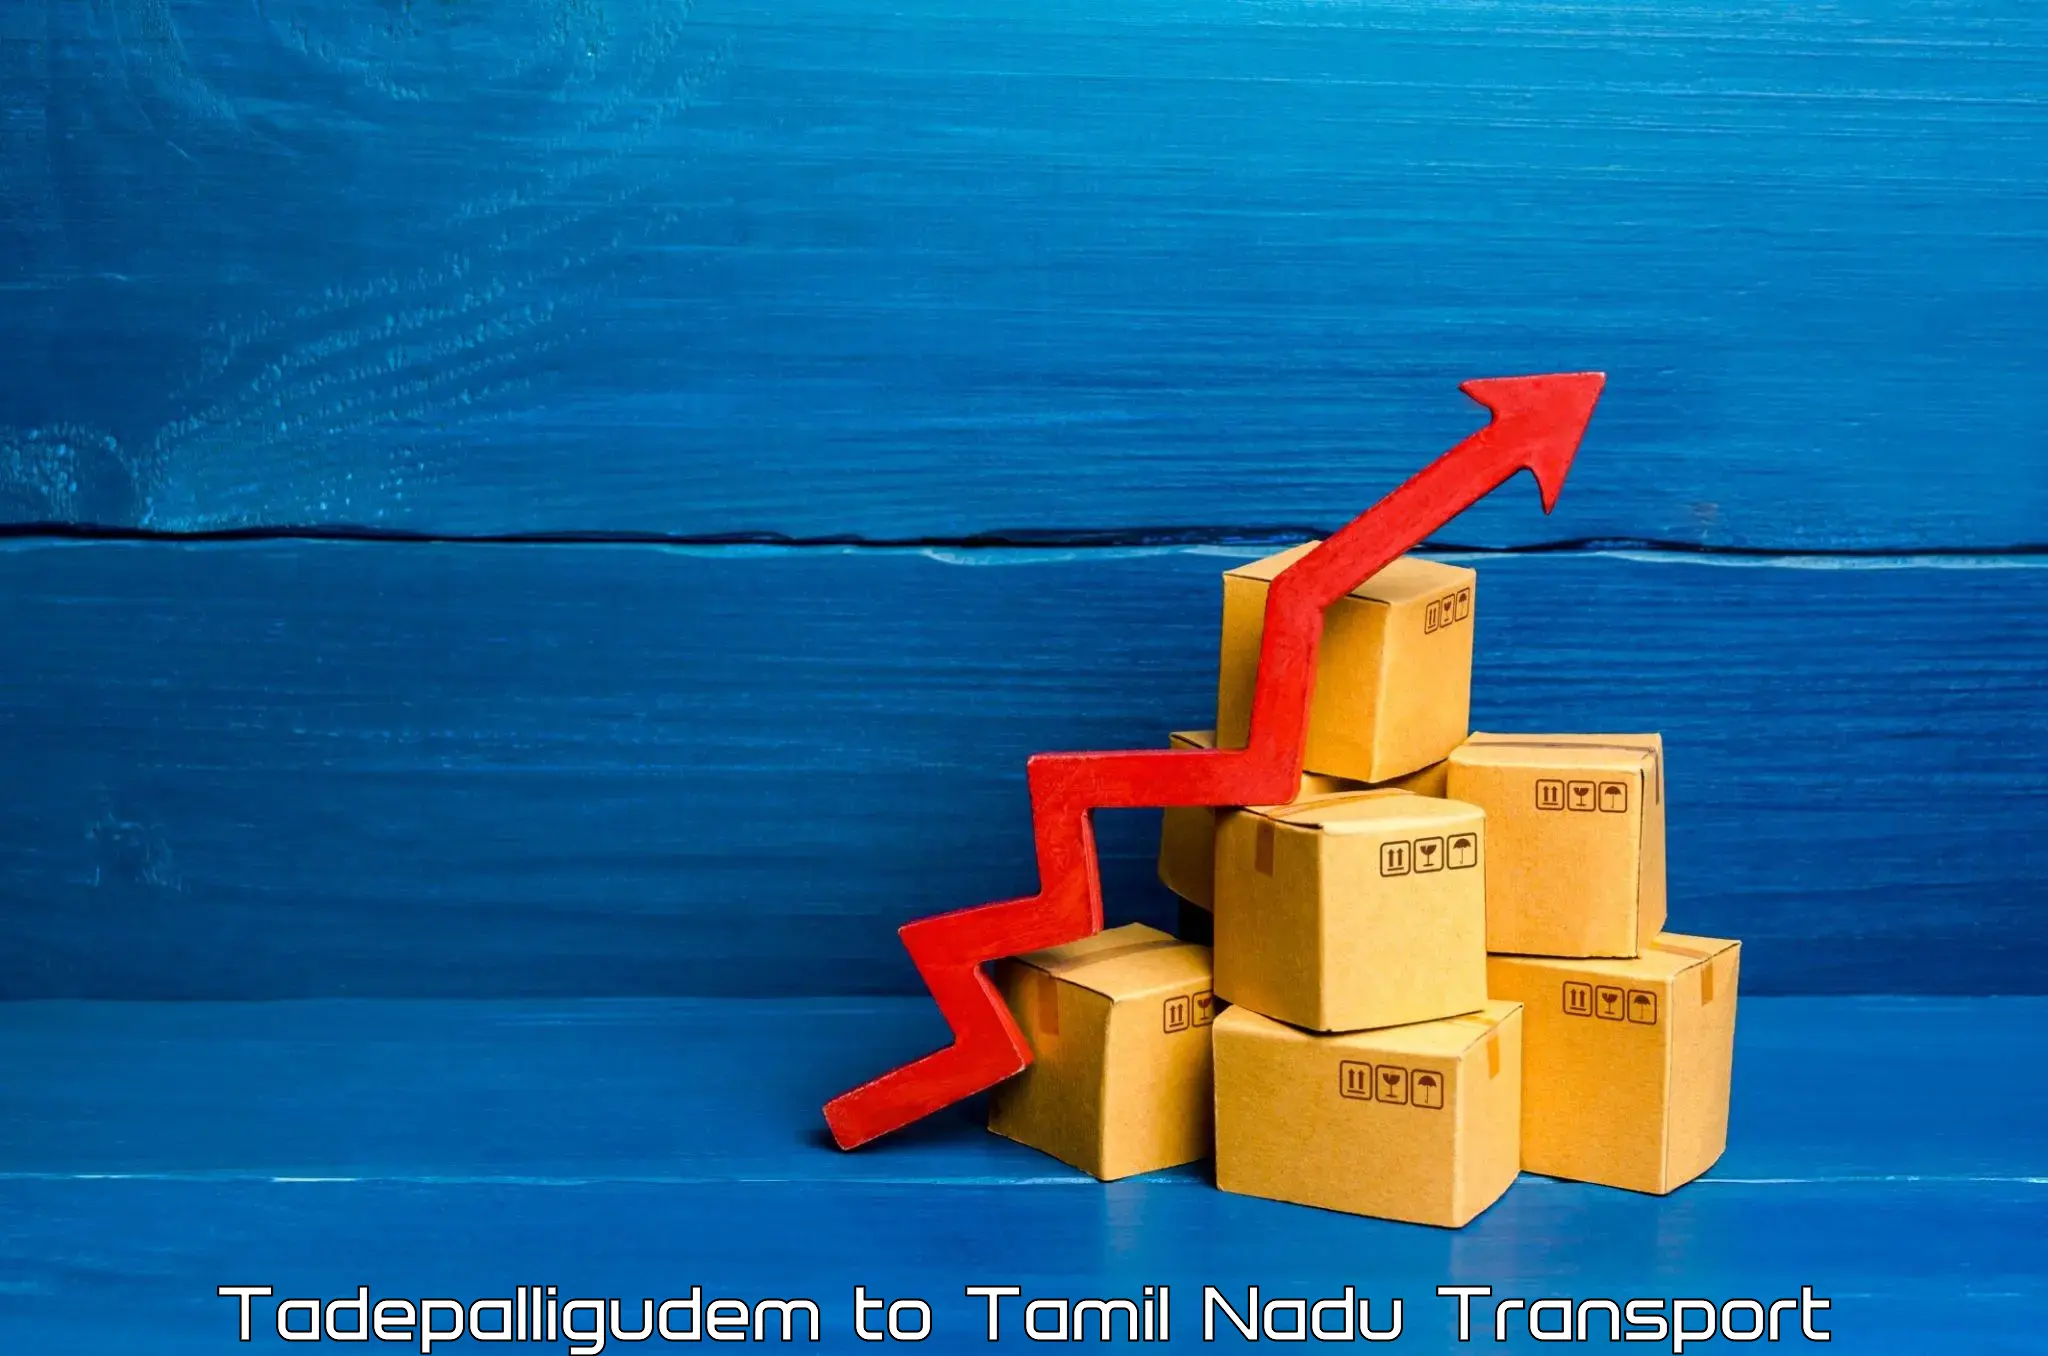 Transport in sharing Tadepalligudem to Tiruturaipundi